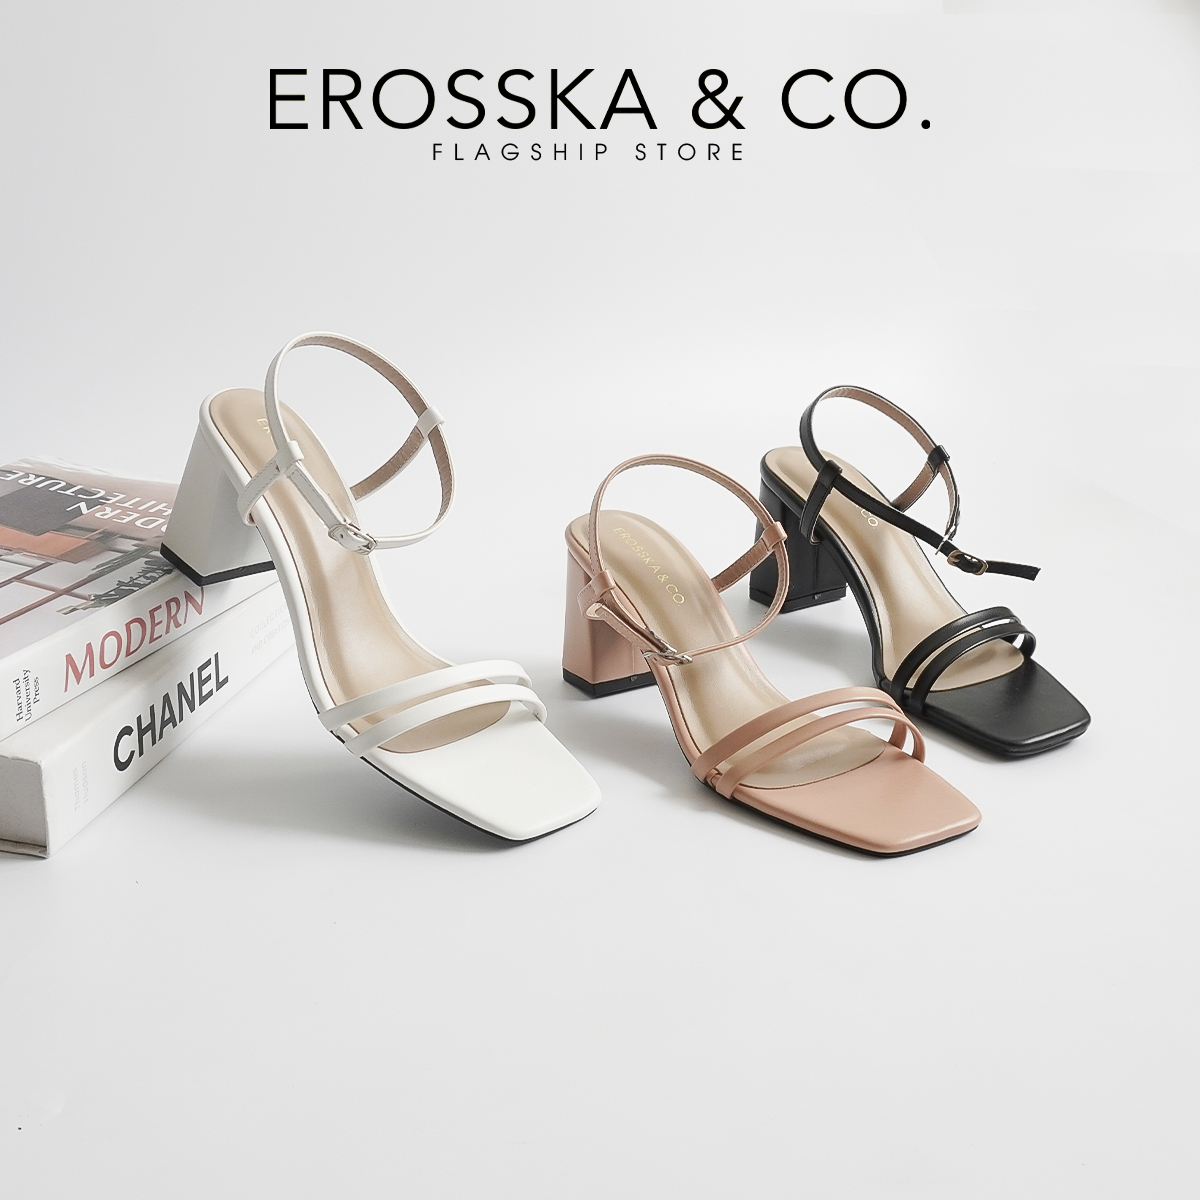 Erosska - Sandal cao gót mũi hở đế vuông phối dây quai mảnh cao 7cm - EB063